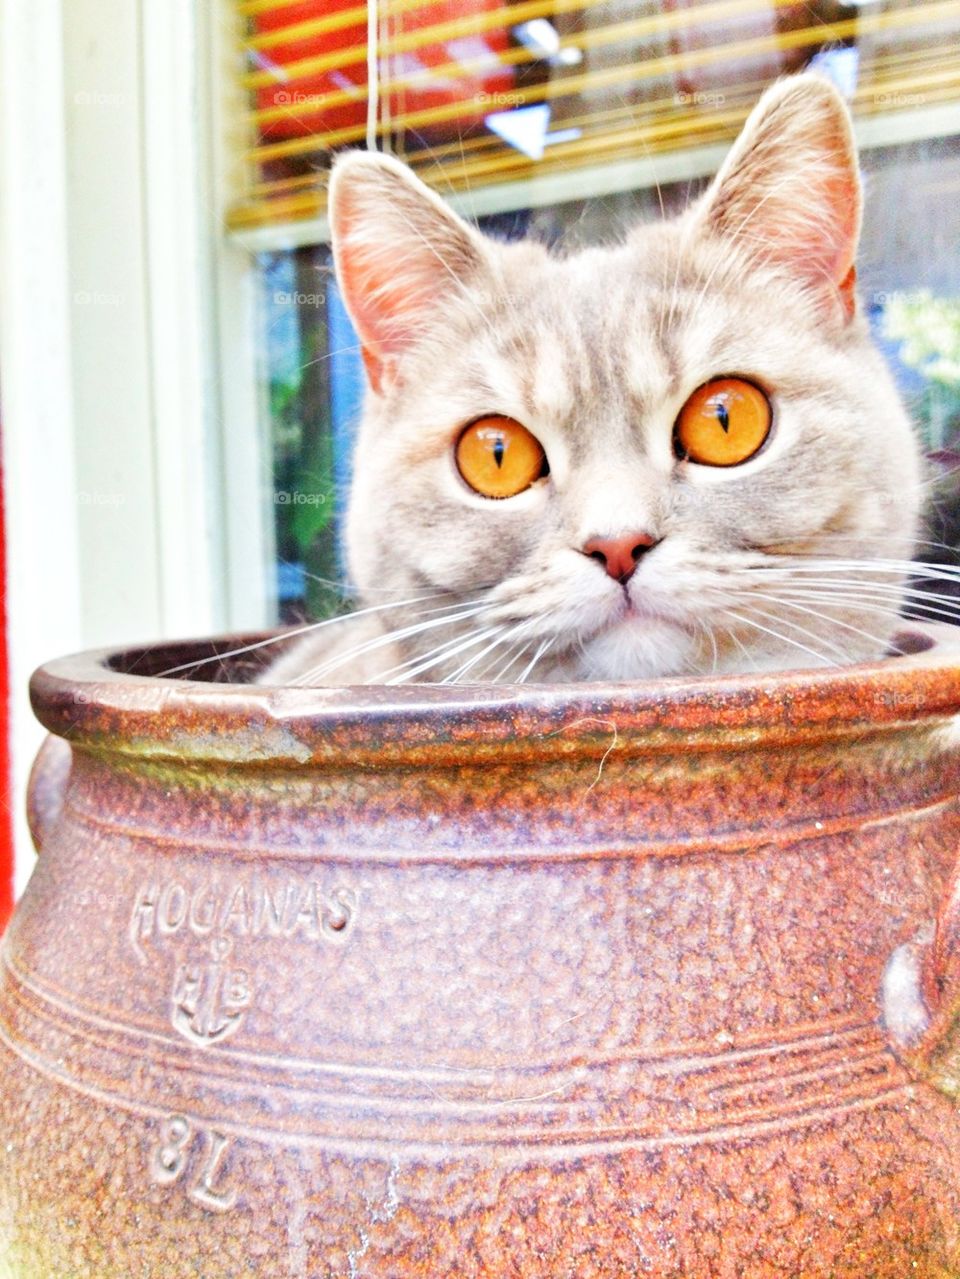 kitten in a pot